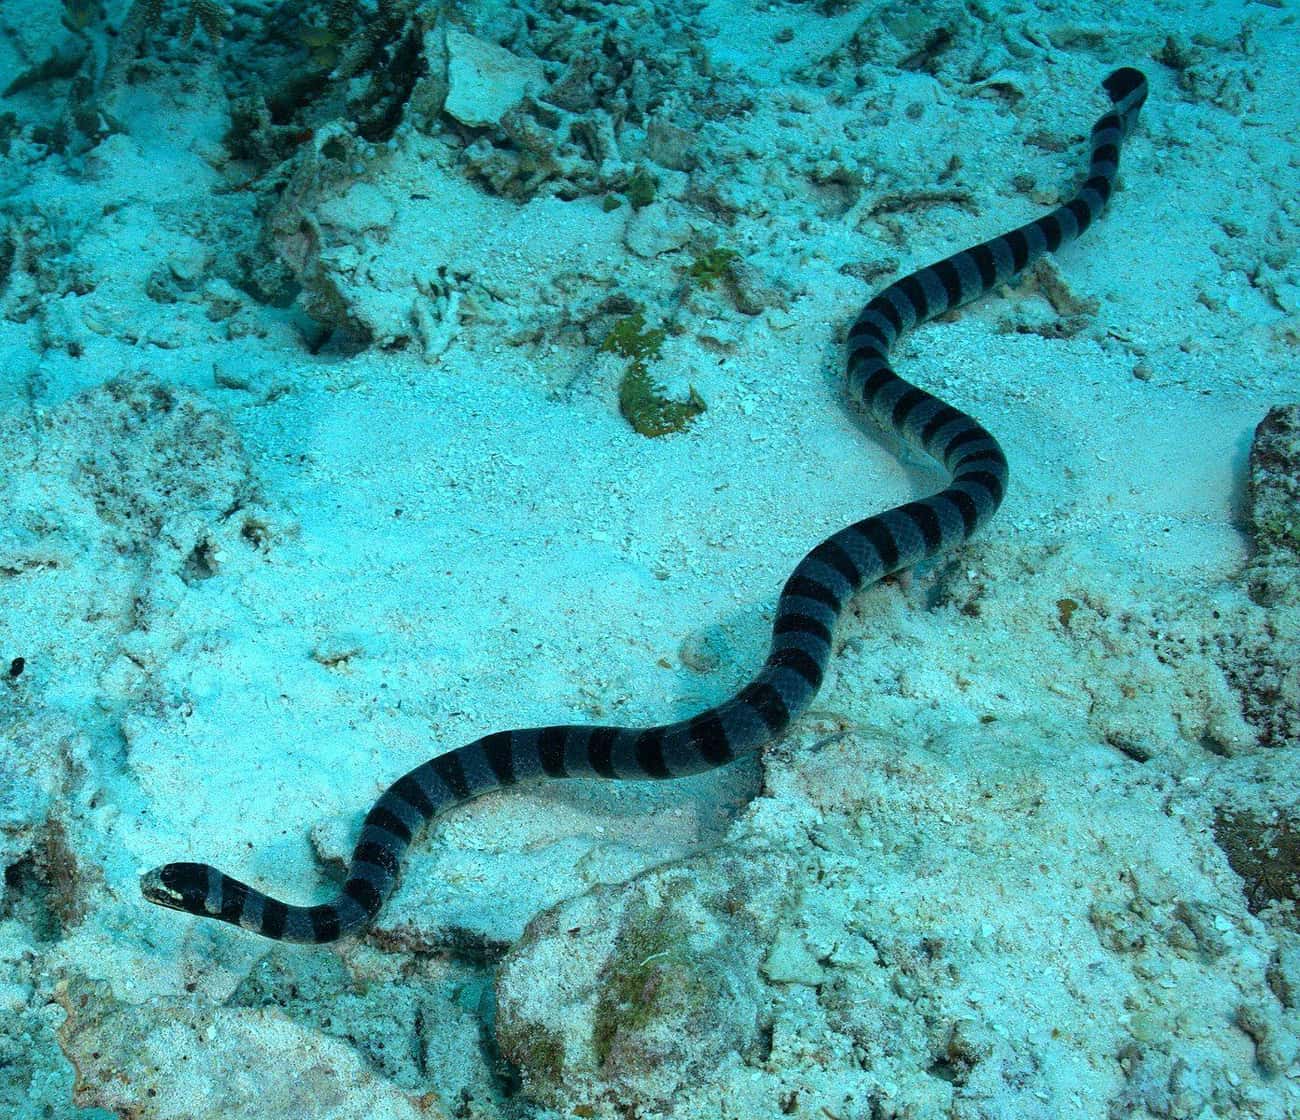 Beaked Sea Snakes